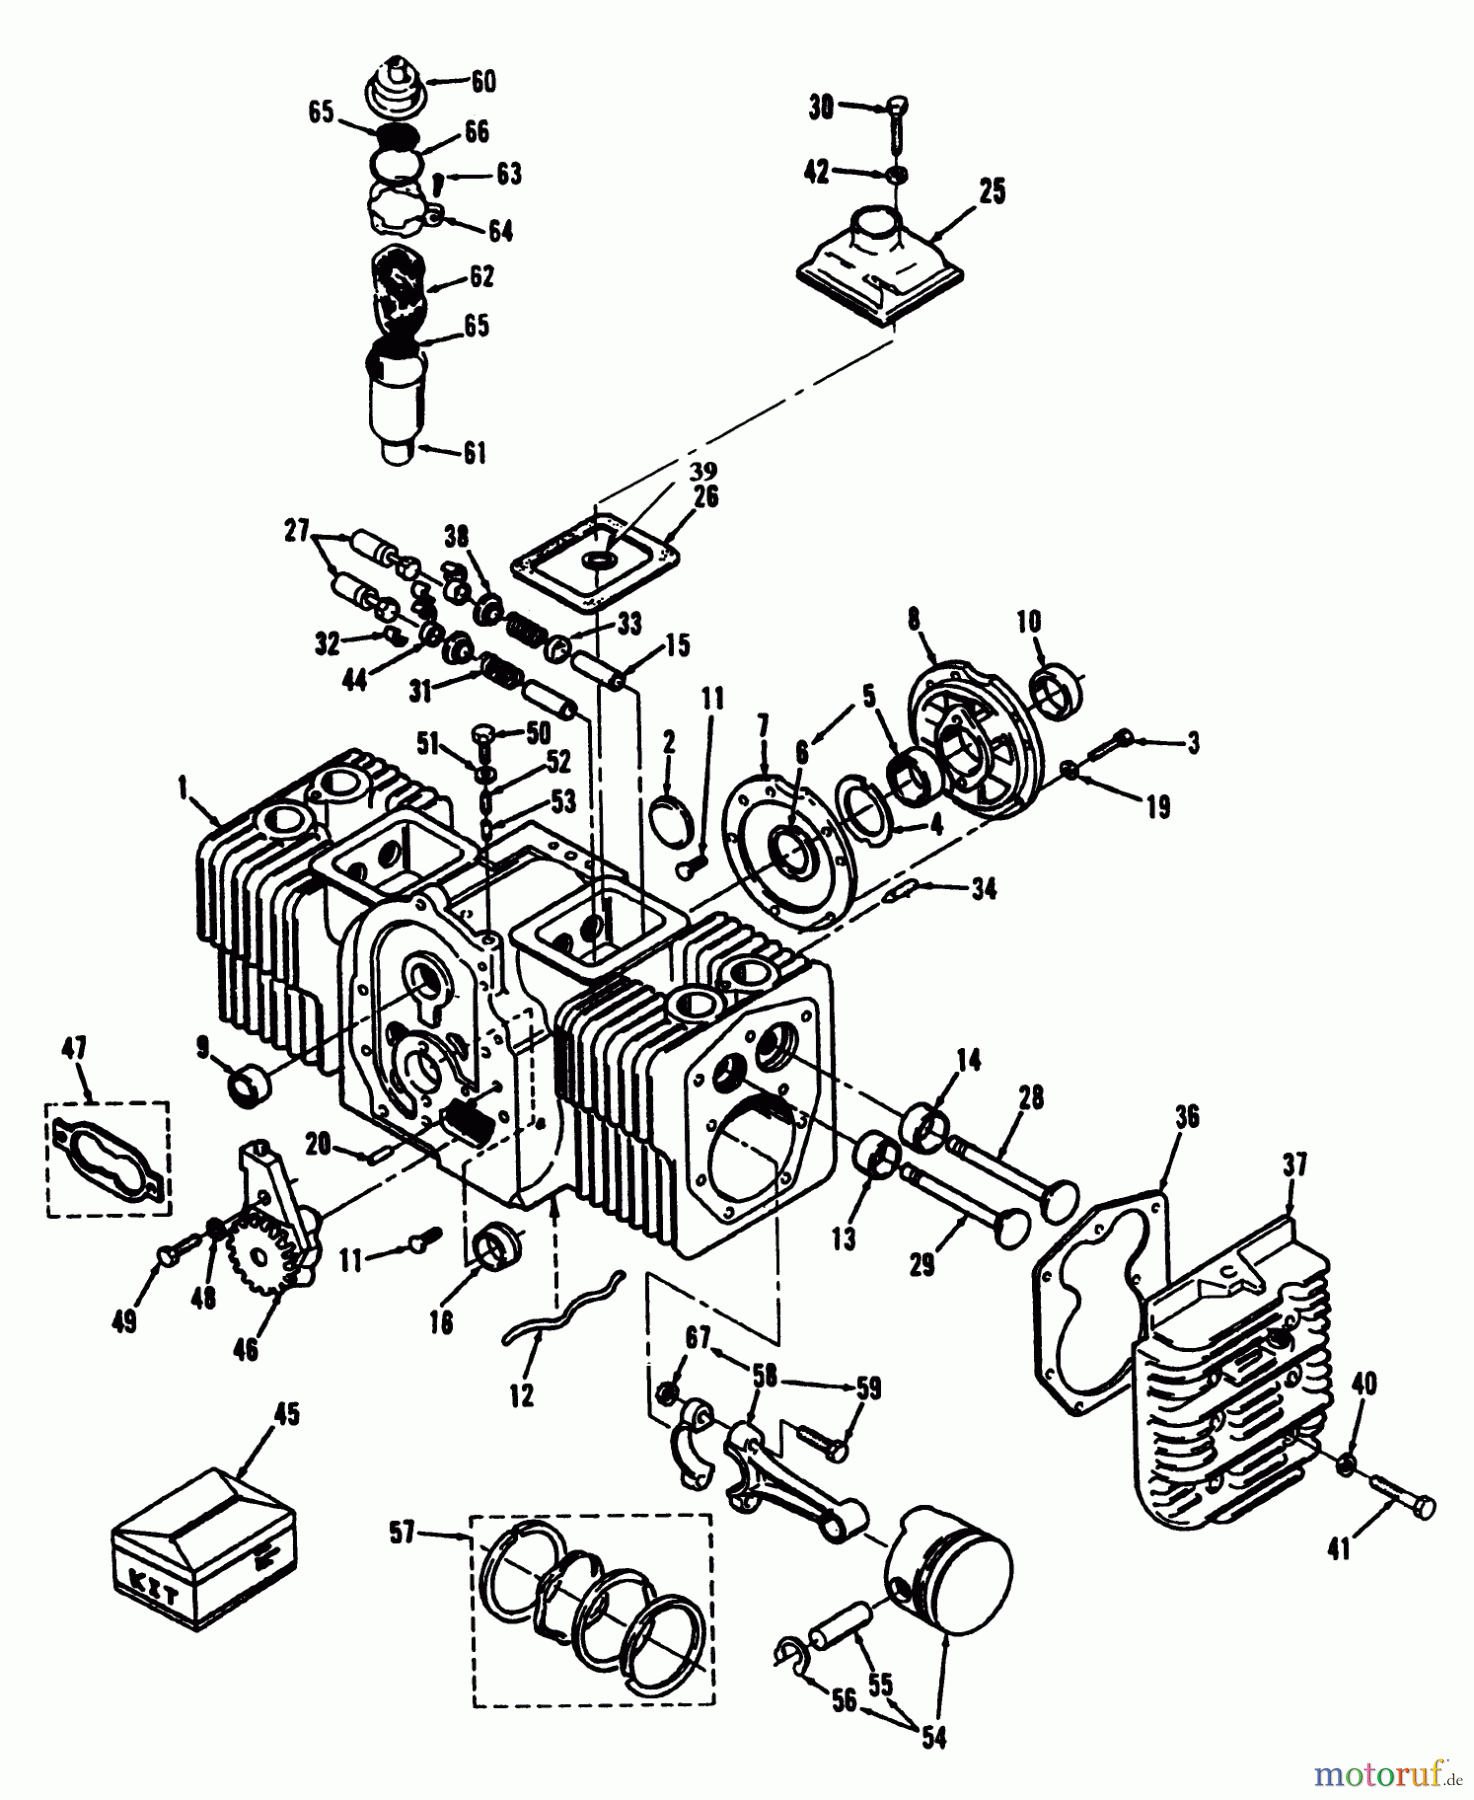  Toro Neu Mowers, Lawn & Garden Tractor Seite 2 R1-20OE02 (520-H) - Toro 520-H Garden Tractor, 1992 (2000001-2999999) ENGINE CYLINDER BLOCK